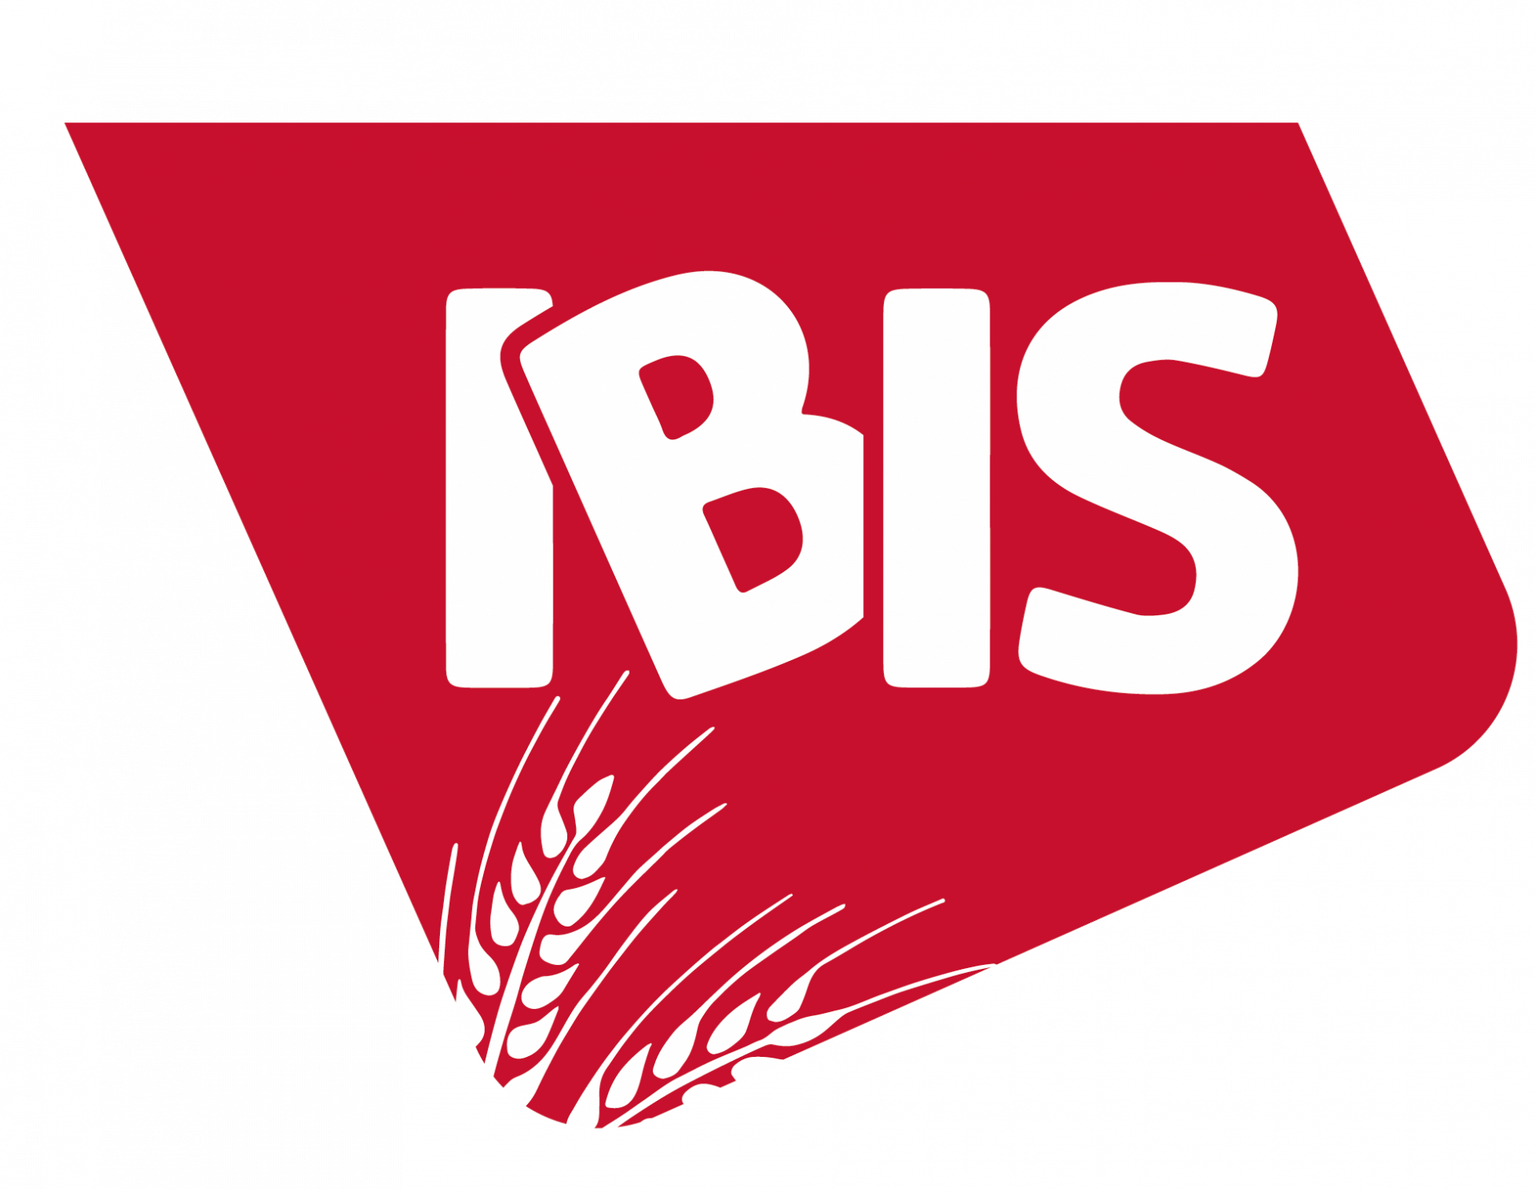 Logo von IBIS Backwarenvertriebs GmbH